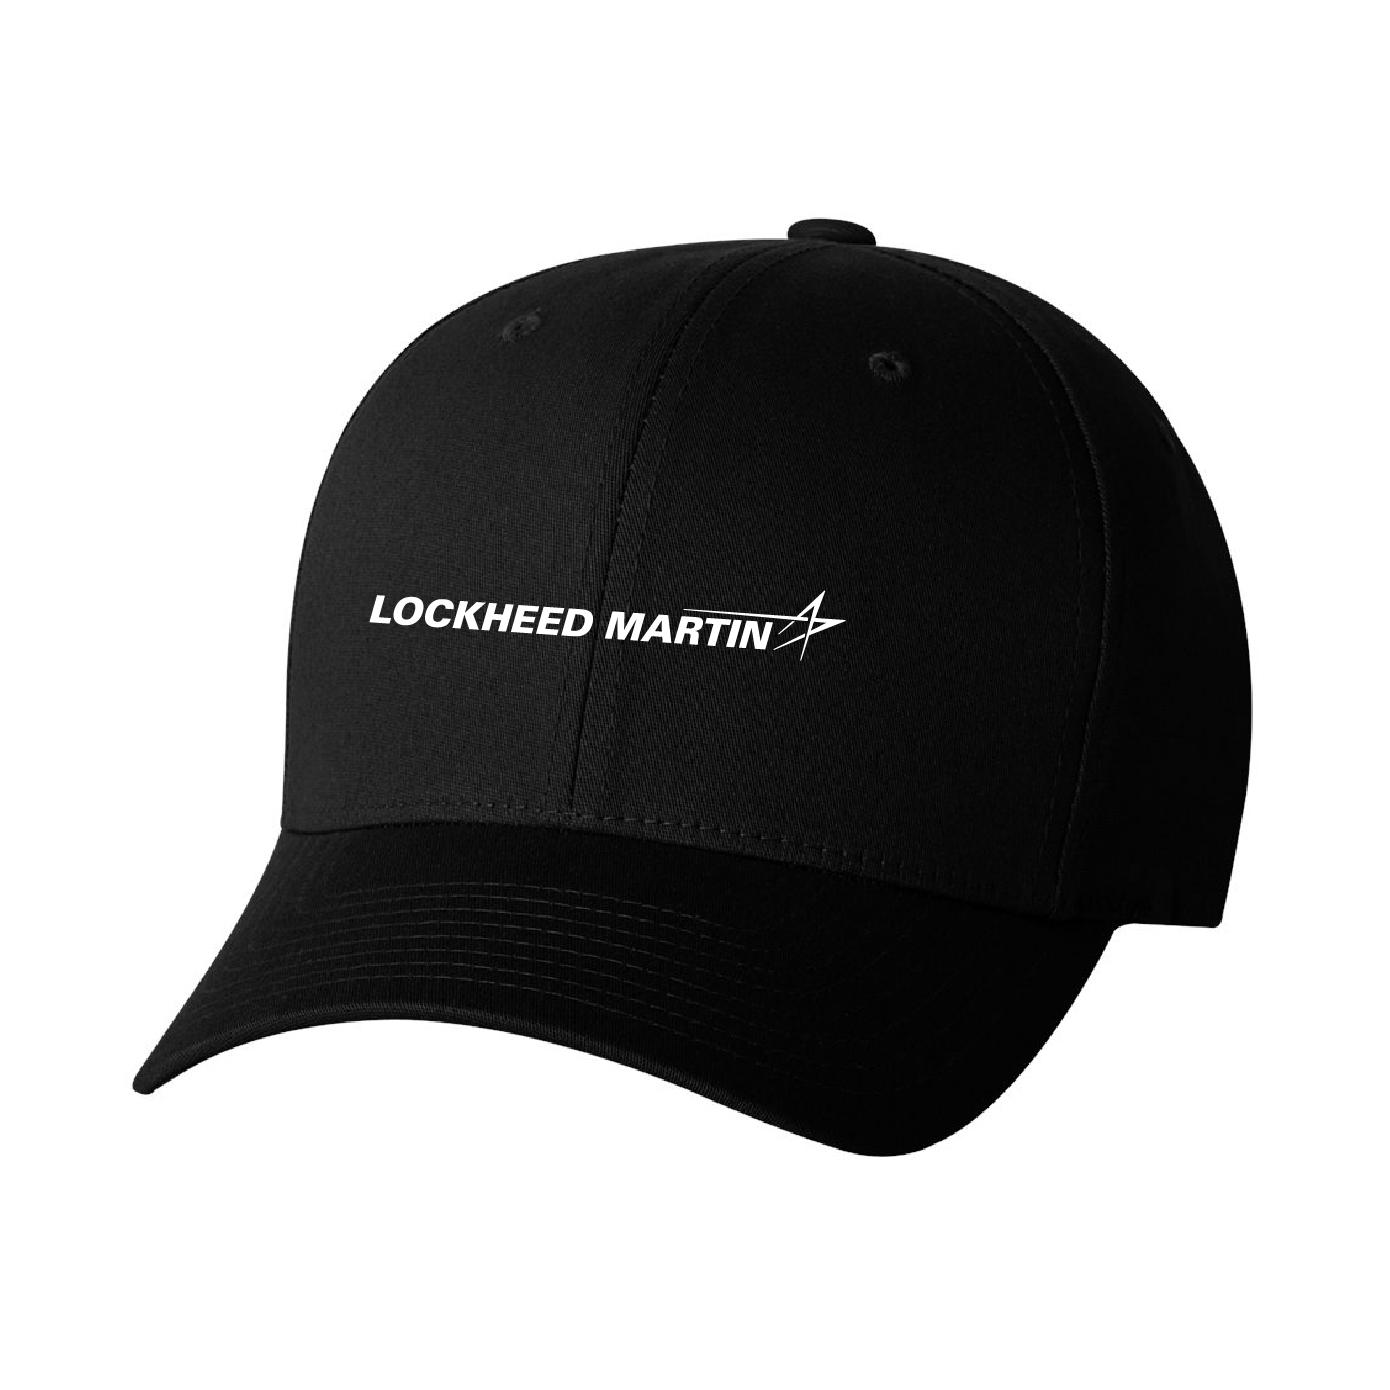 Lockheed Martin Adult Flex Fit Cotton Twill Cap #1